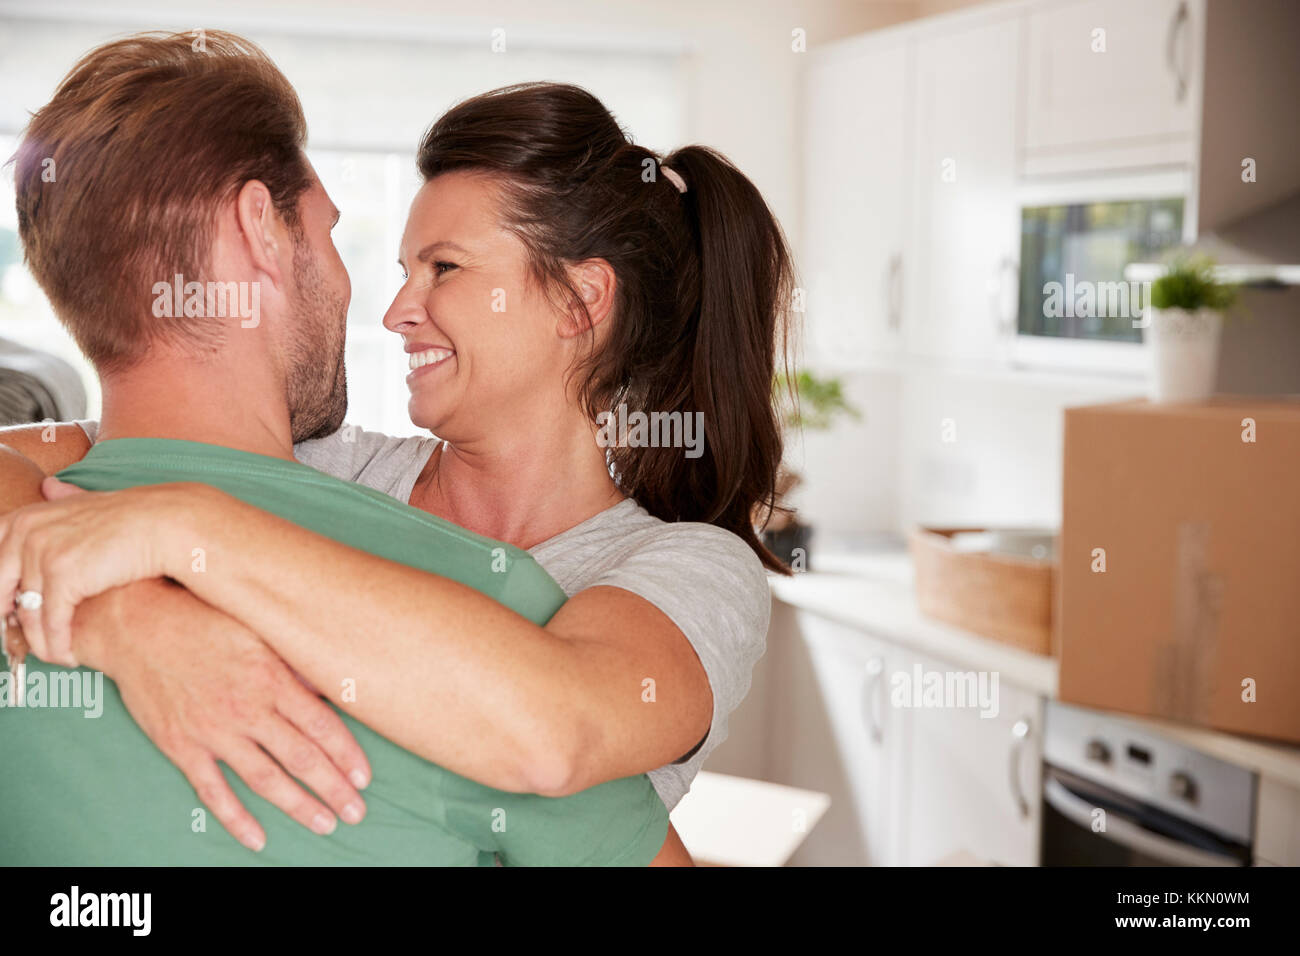 Loving Couple Celebrating Engagement At Home Stock Photo